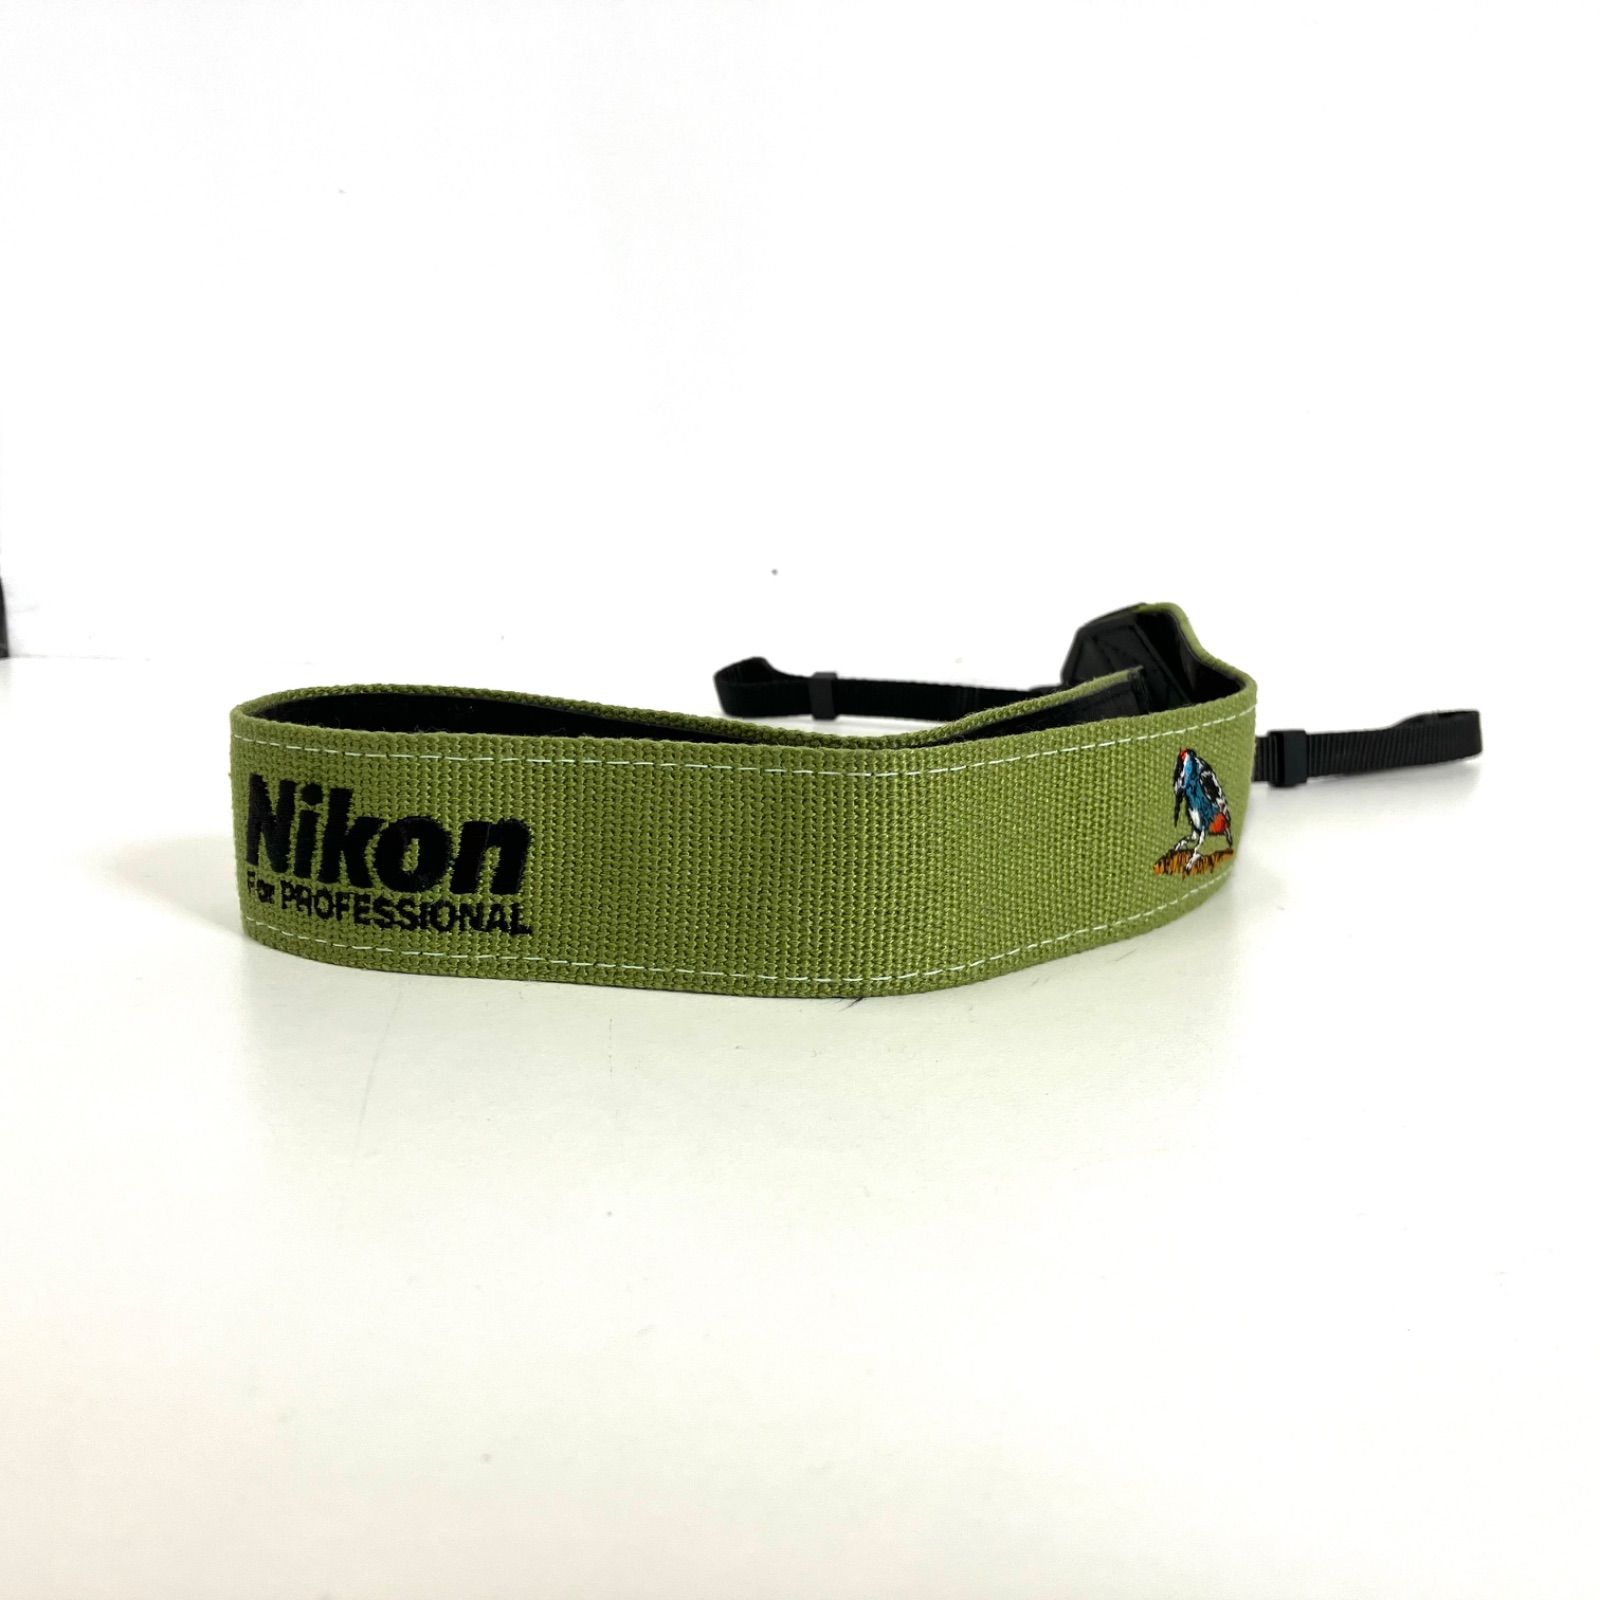 0】 Nikon FOR PROFESSIONAL カワセミ カメラストラップ 美品 - メルカリ